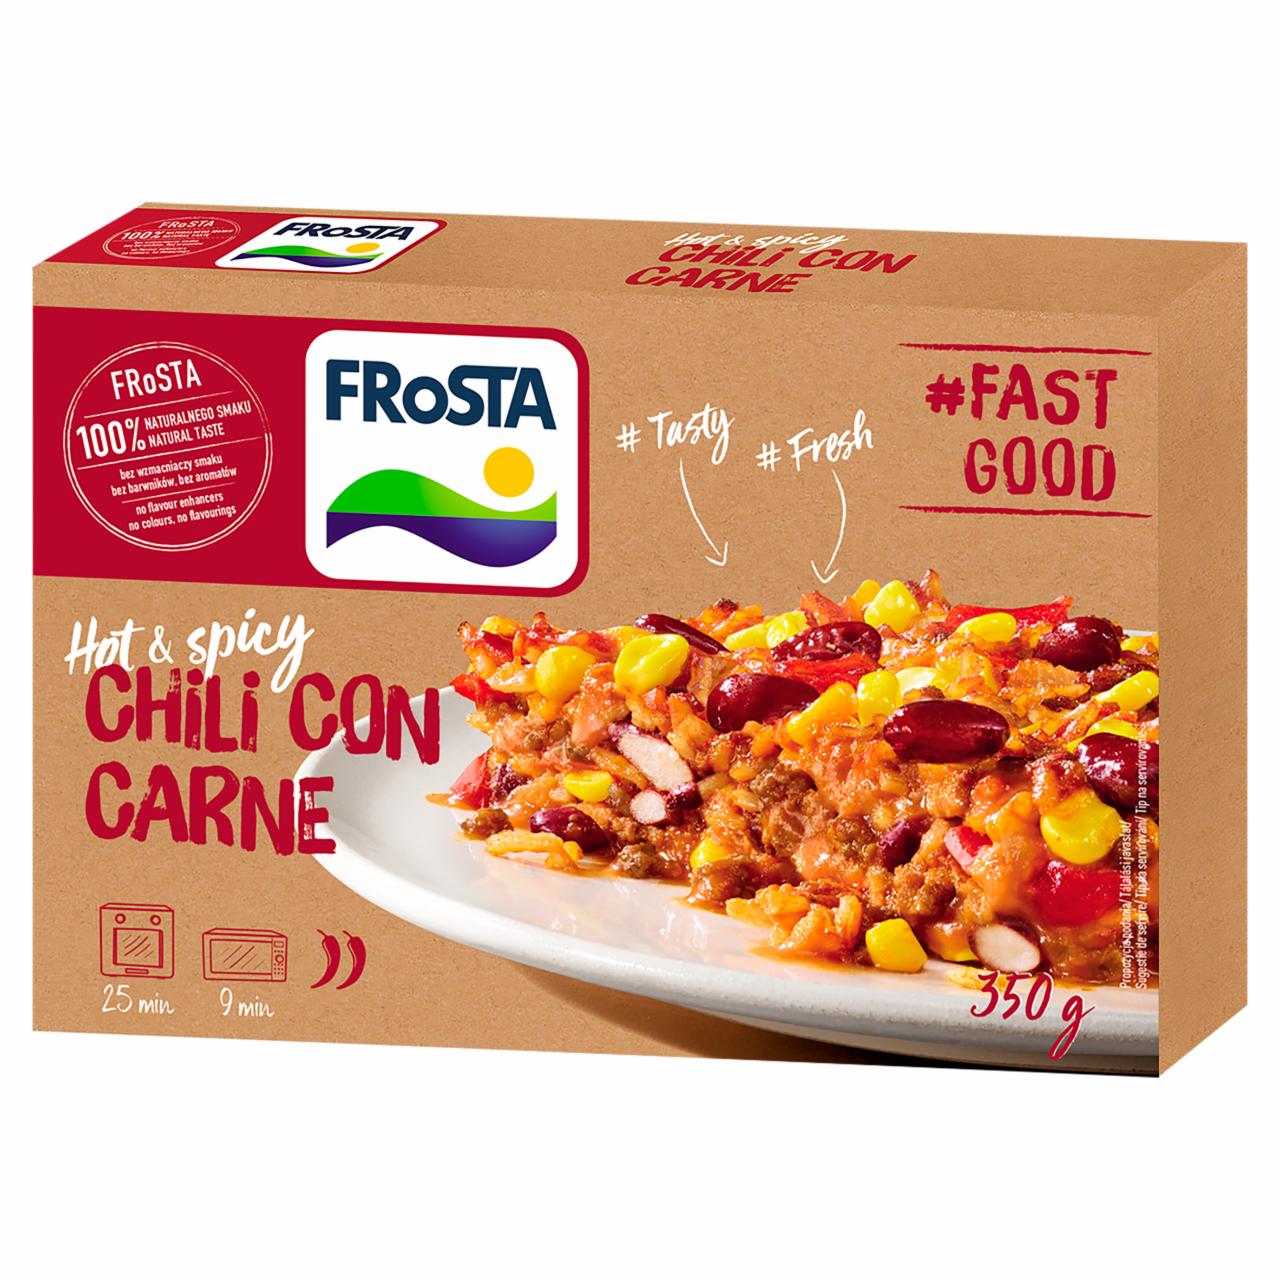 Képek - FRoSTA gyorsfagyasztott chili con carne 350 g